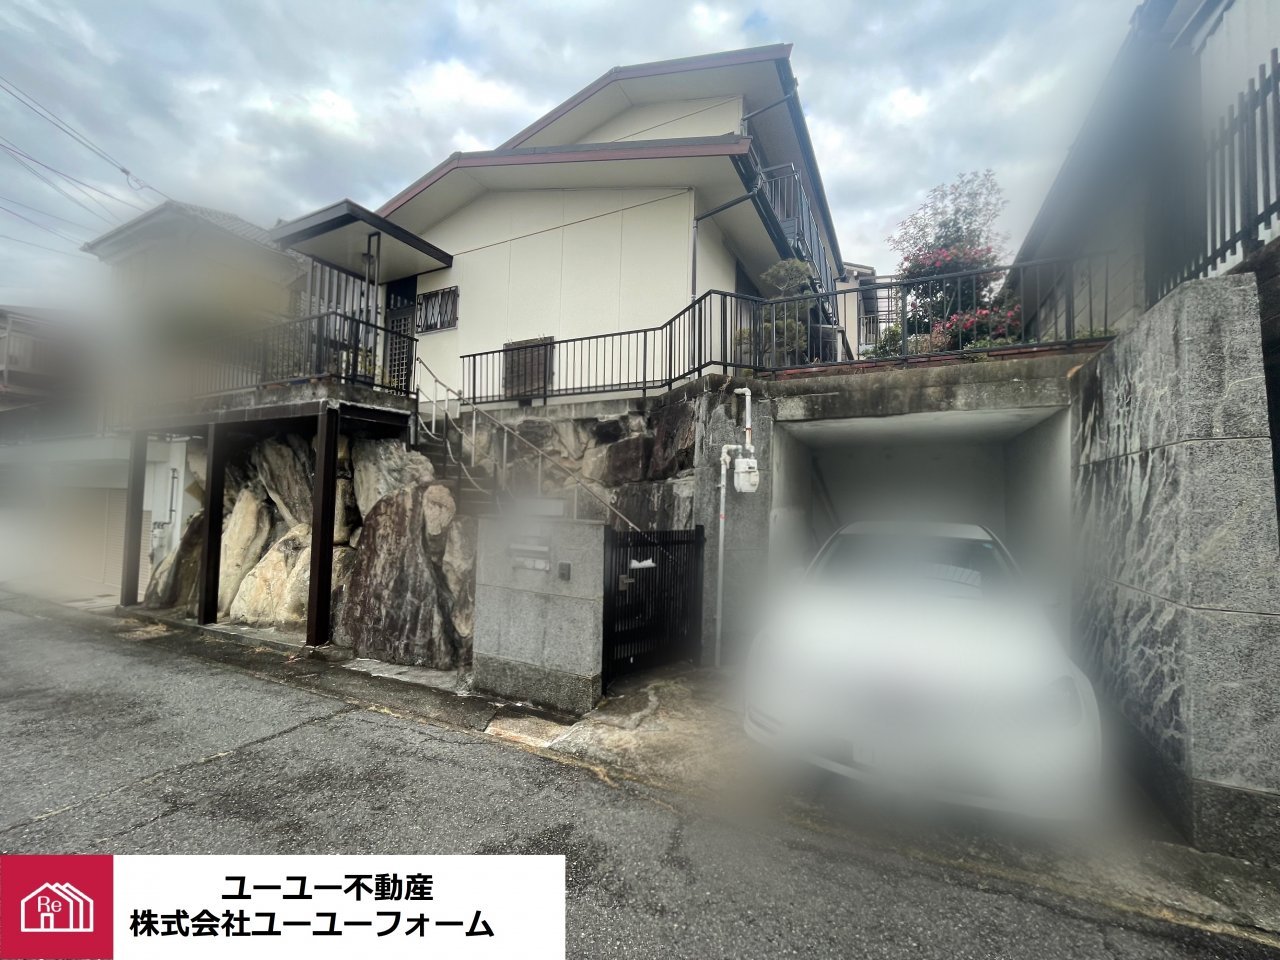 ユーユー不動産が神戸市北区で仲介で売却した戸建